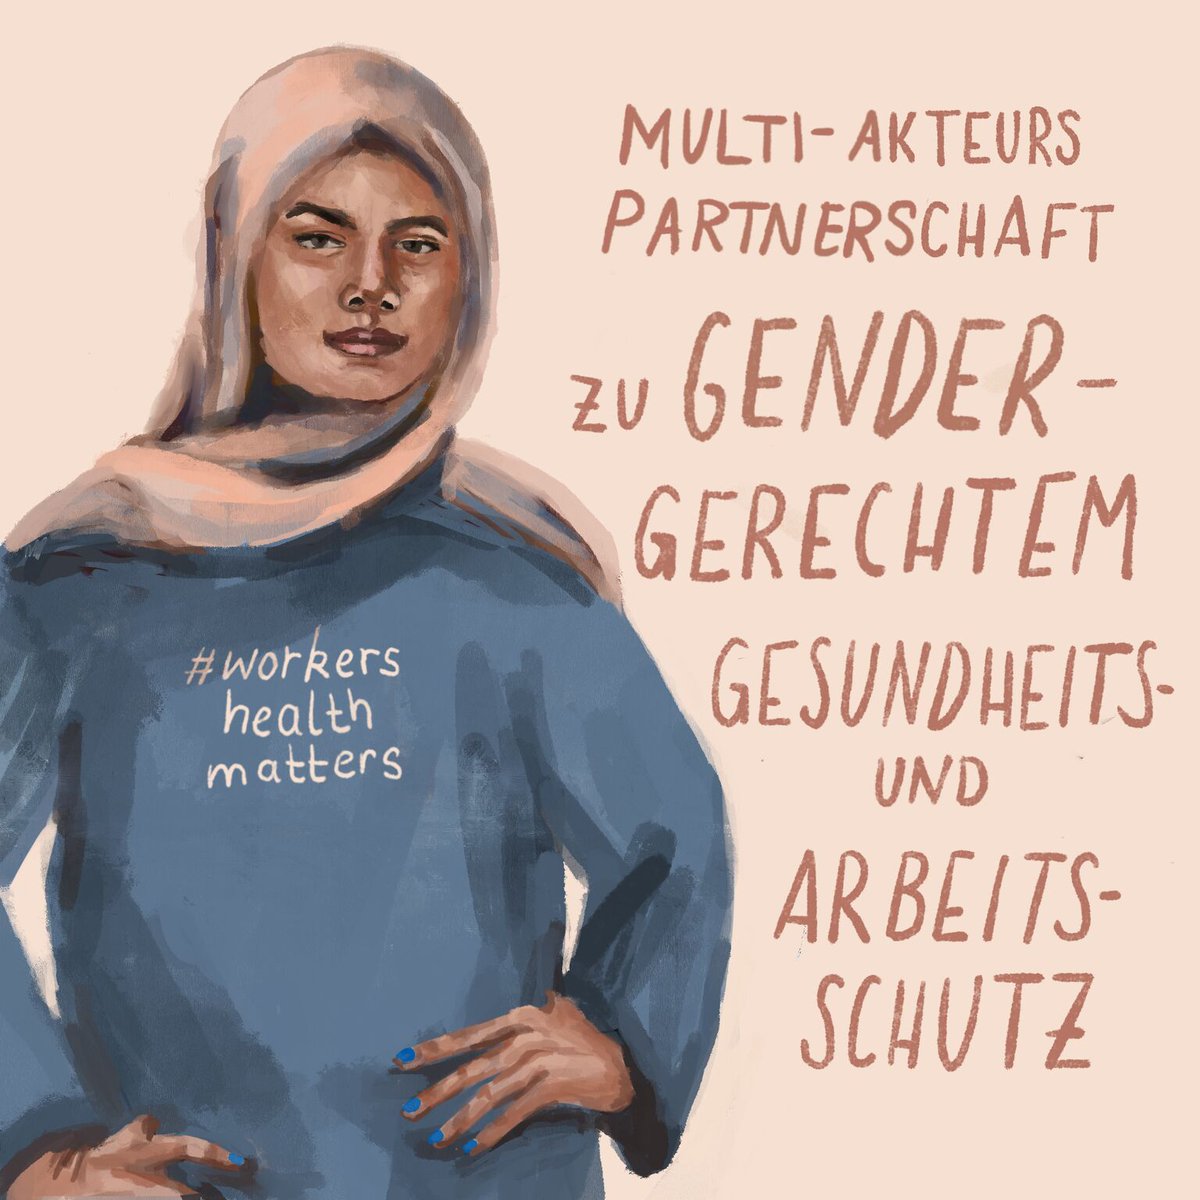 Wir suchen eine*n engagierte*n Praktikant*in zu gendergerechtem Arbeits- und Gesundheitsschutz in der Schuh- und Bekleidungsindustrie im Zeitraum 21.07.-20.10.2023 in Bonn. 
#gender #fairfashion #bizhumanrights #Indonesien
Infos in diesem Thread. (1/5)